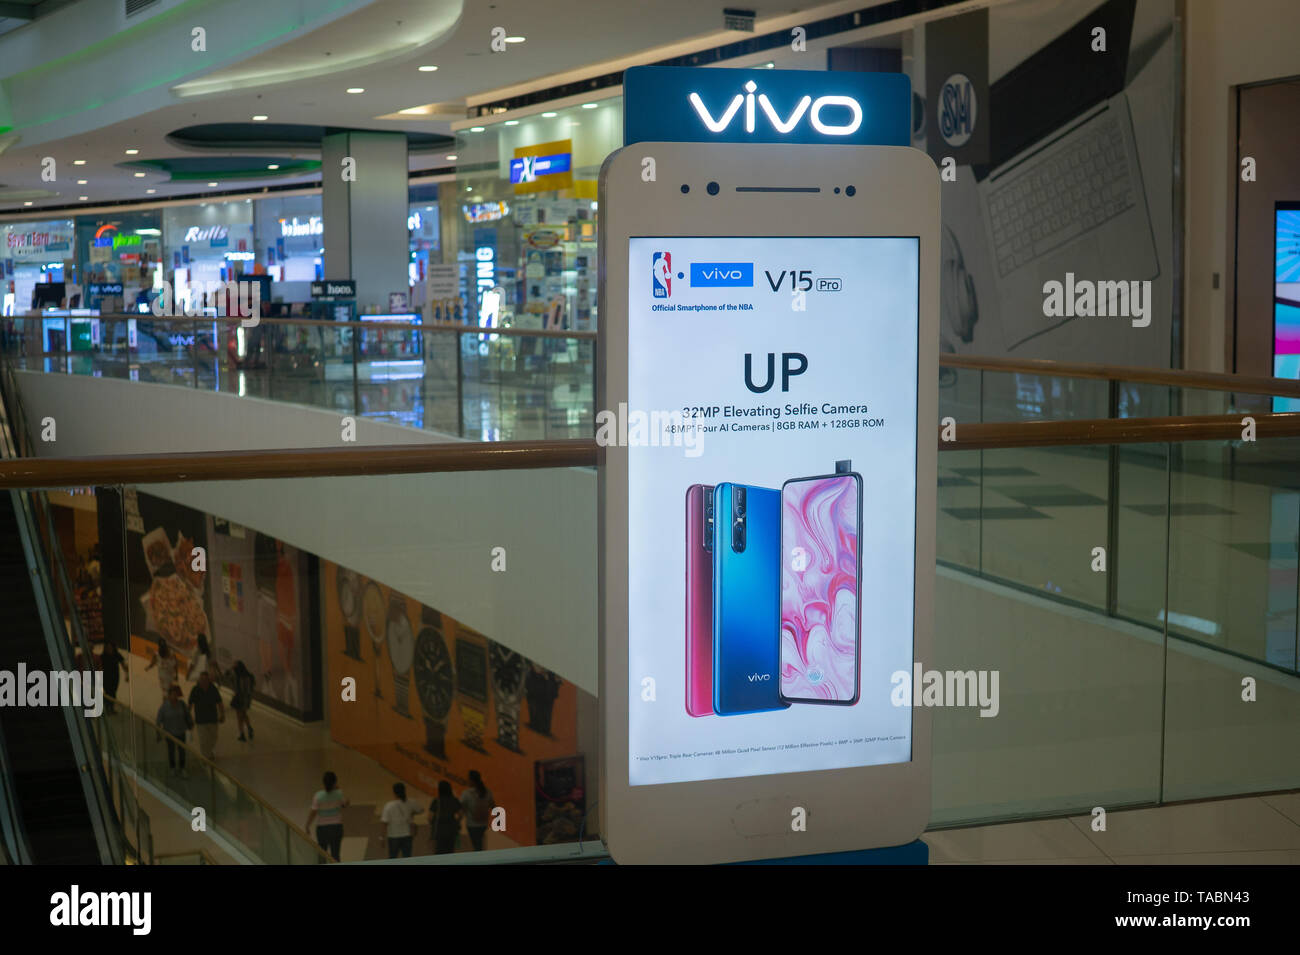 La signalisation à l'intérieur d'un centre commercial des Philippines in vivo de la publicité de téléphones mobiles. Téléphones cellulaires in vivo sont faites par une société de technologie chinoise et une marque leader Banque D'Images